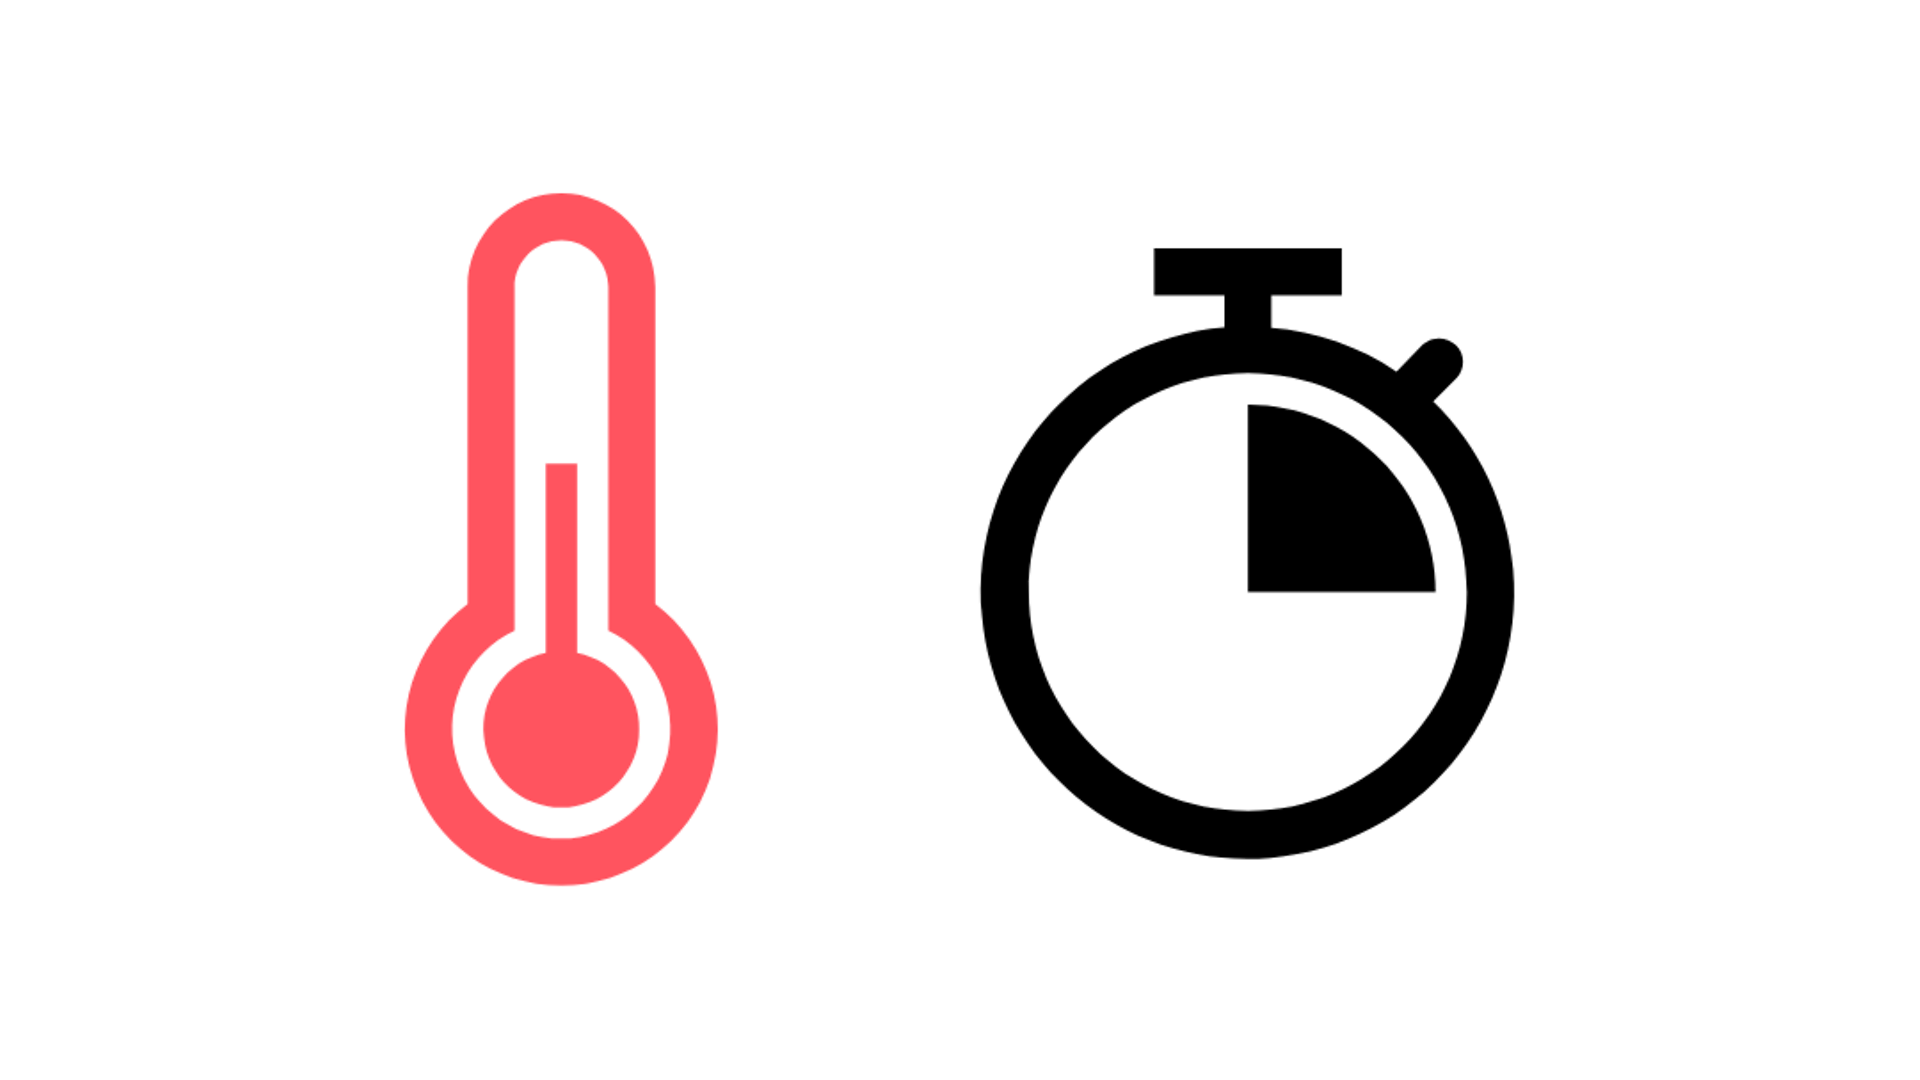 czerwony symbol termometru i symbol zegara, kwadrans